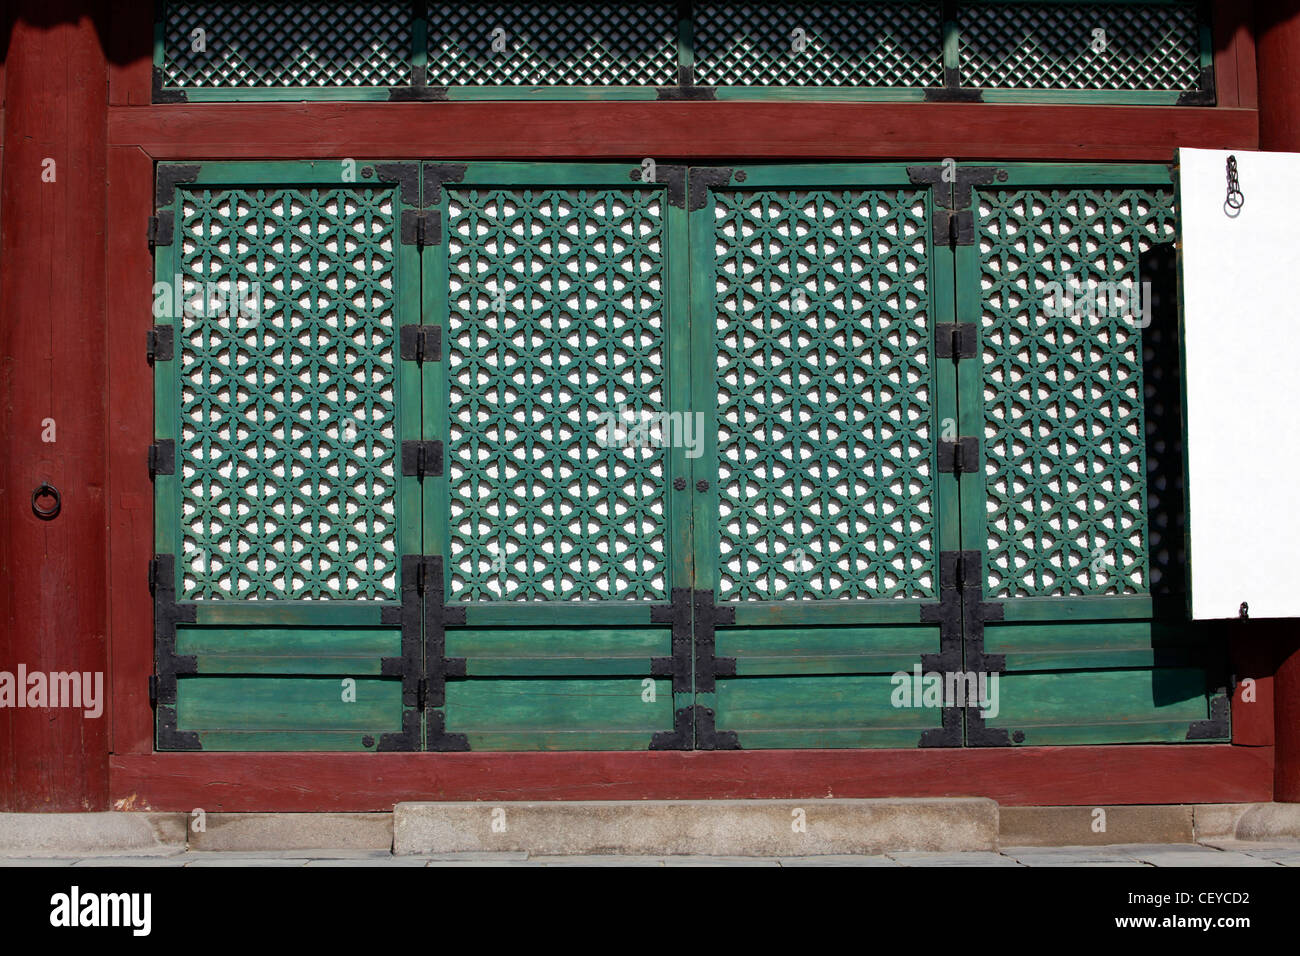 Persianas verdes de la arquitectura de Geunjeongjeon orientales, el Salón del Trono del Palacio Gyeongbok en Seúl, Corea del Sur Foto de stock